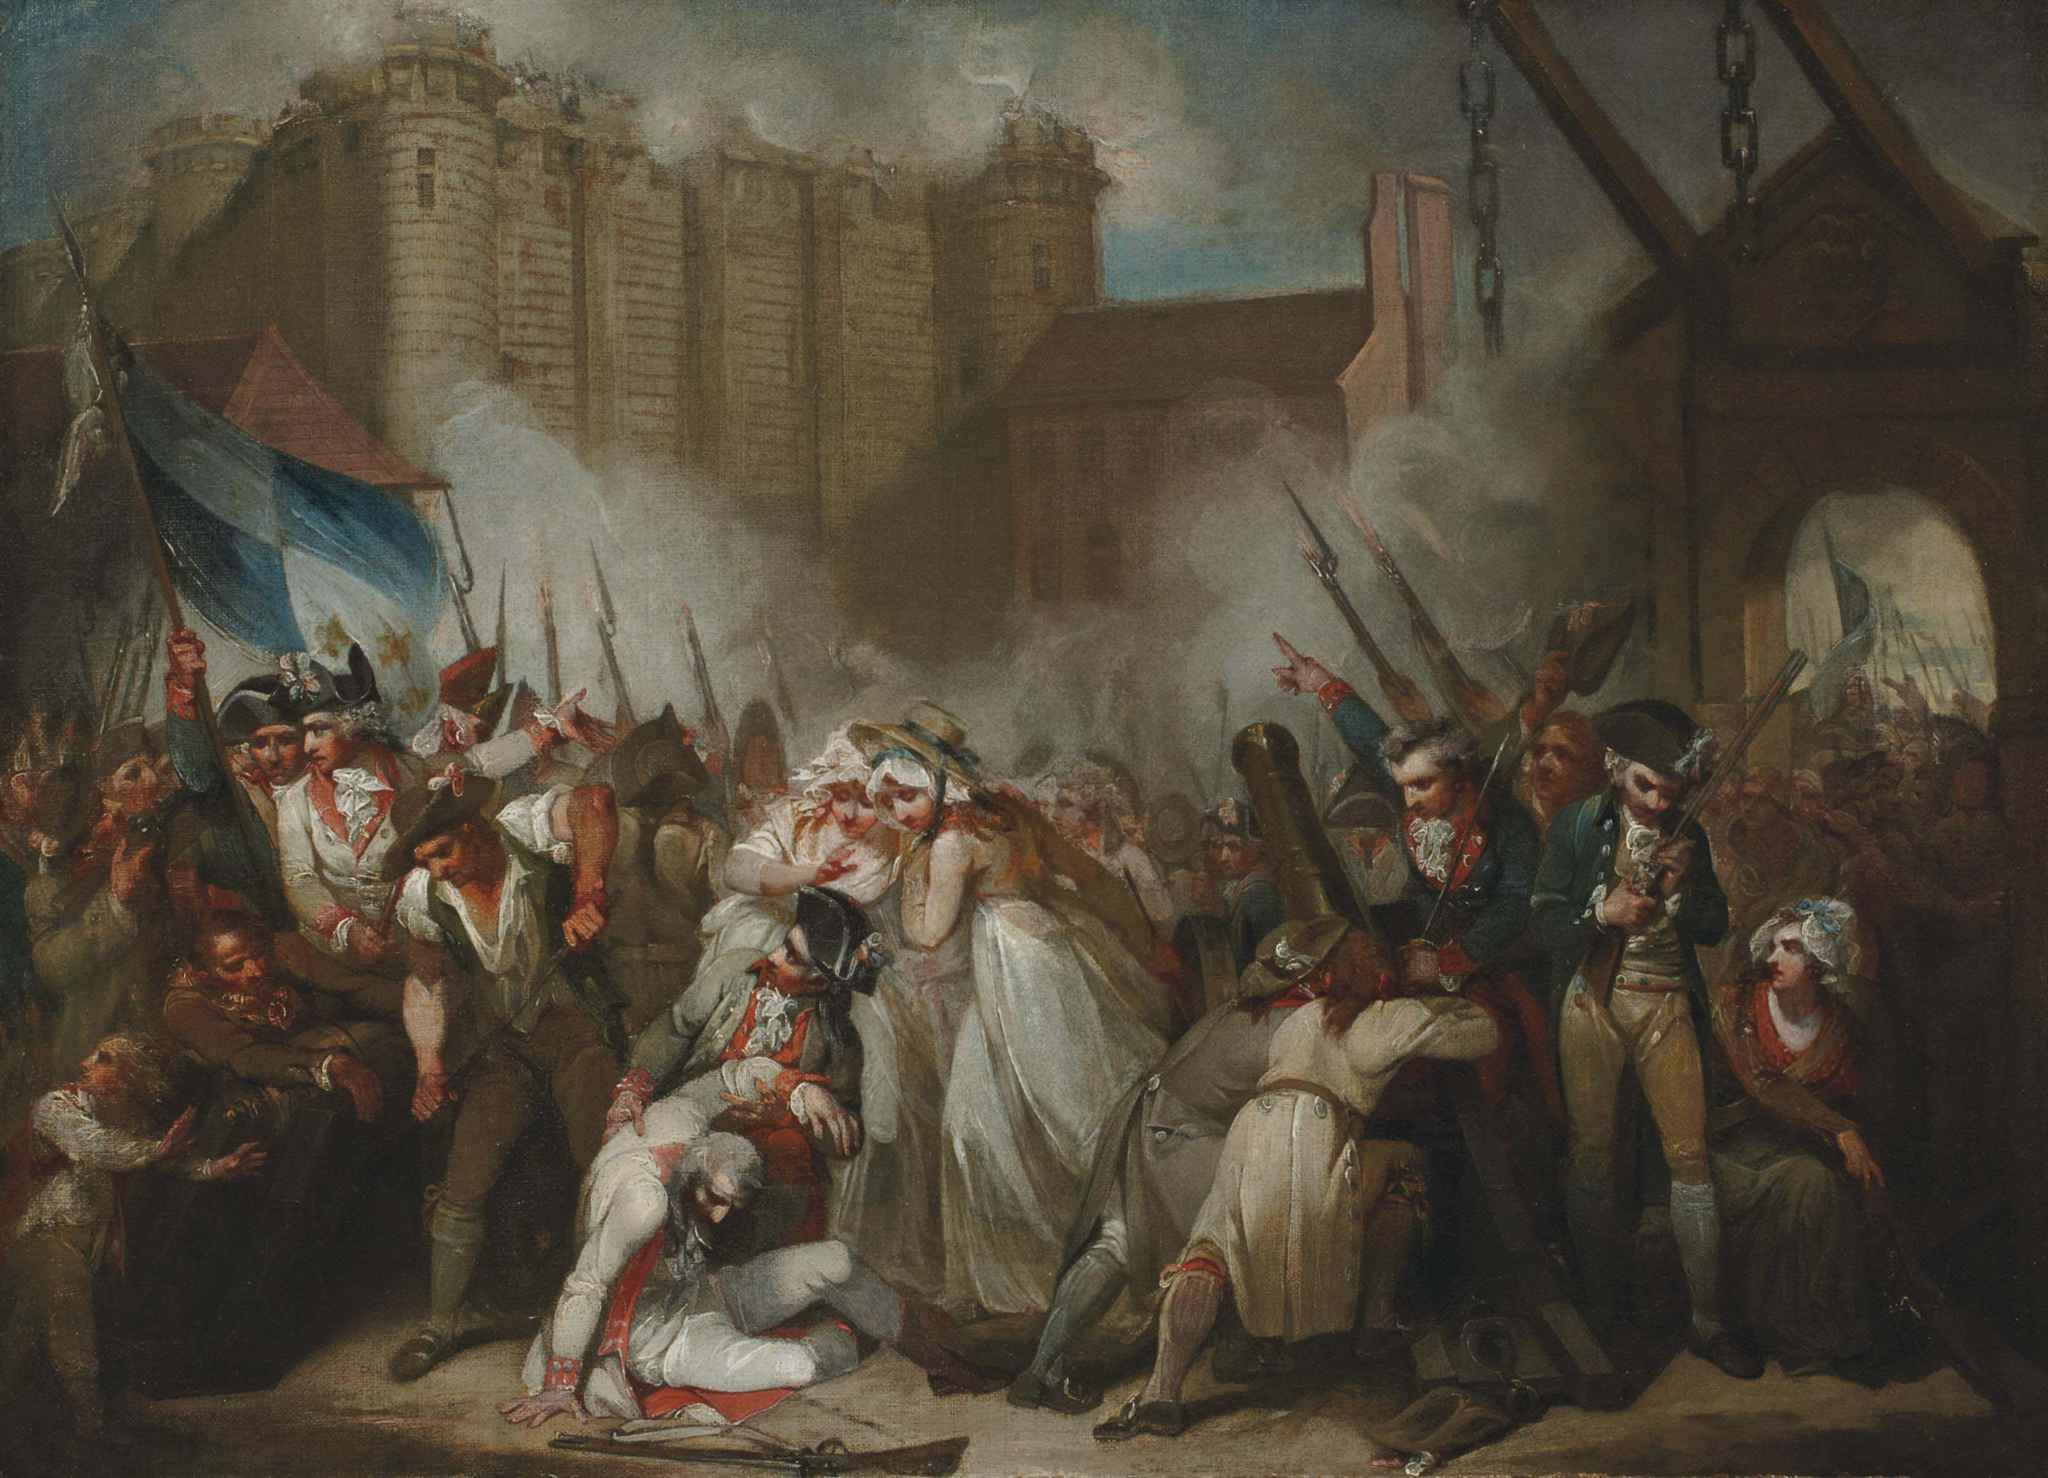 法国大革命简史,争议性极大,但其意义却远胜于美国独立